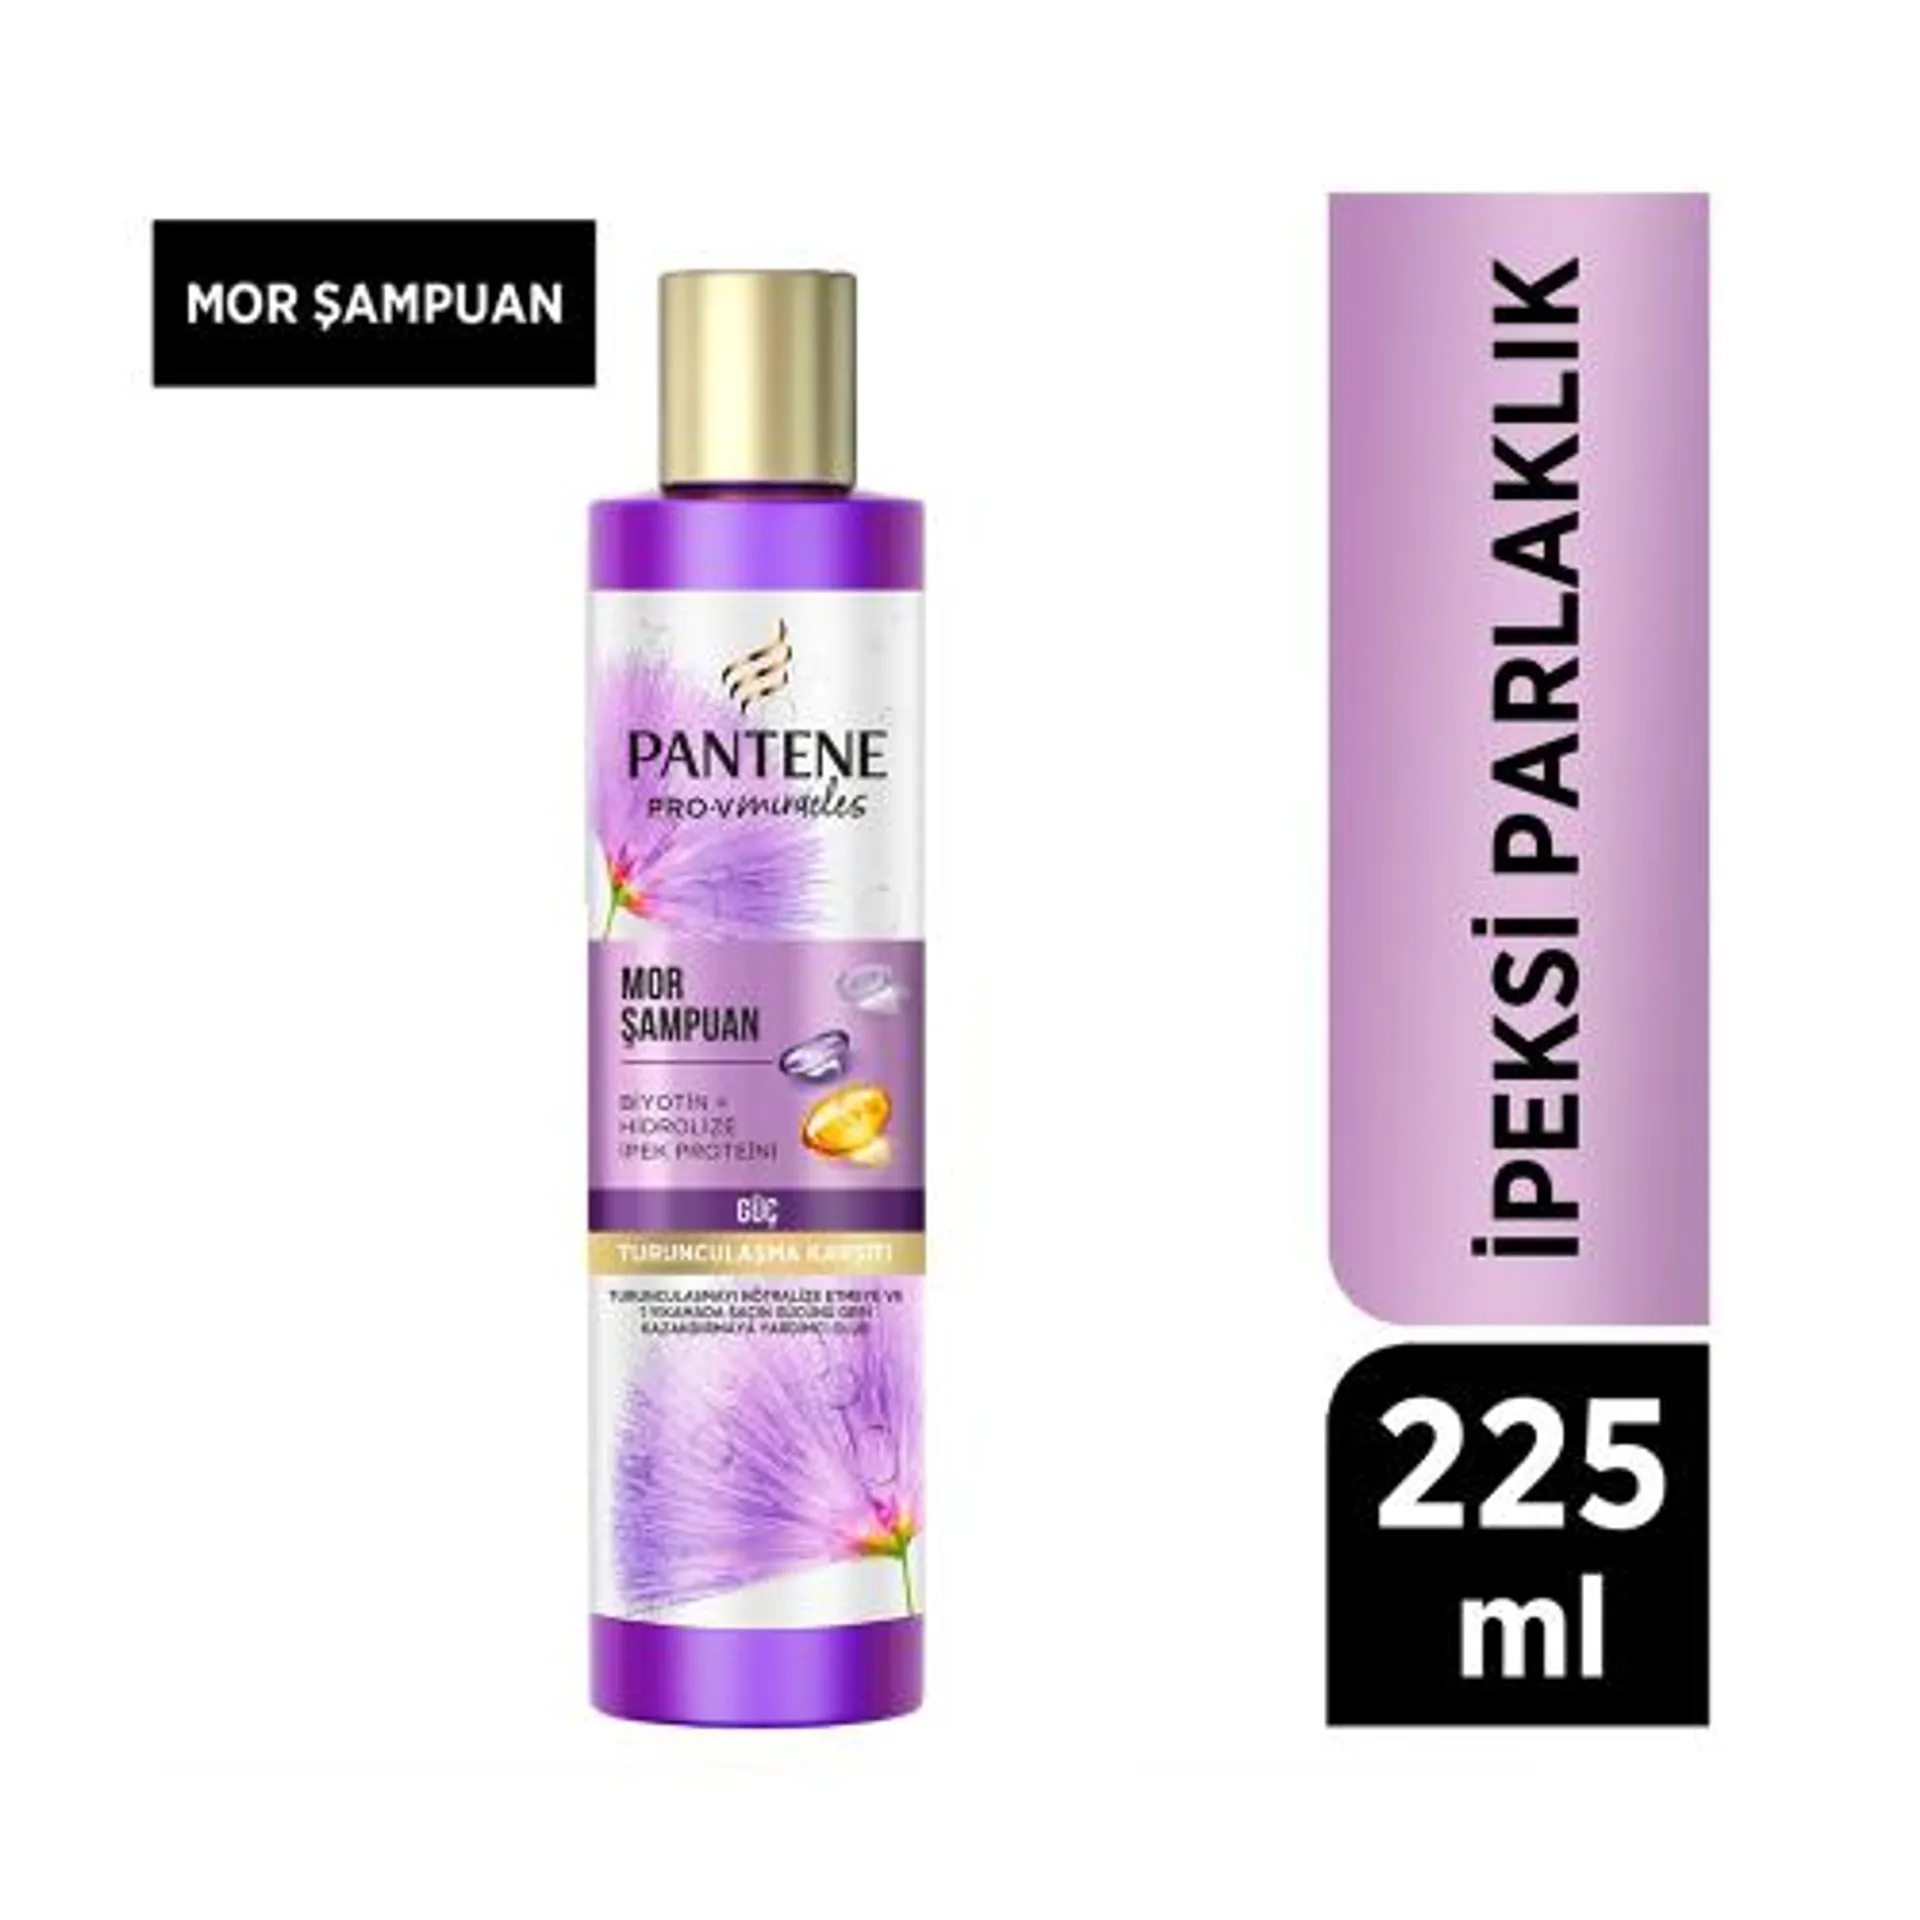 Pantene PRO-V İpeksi Parlaklık Mor Şampuan 225 Ml